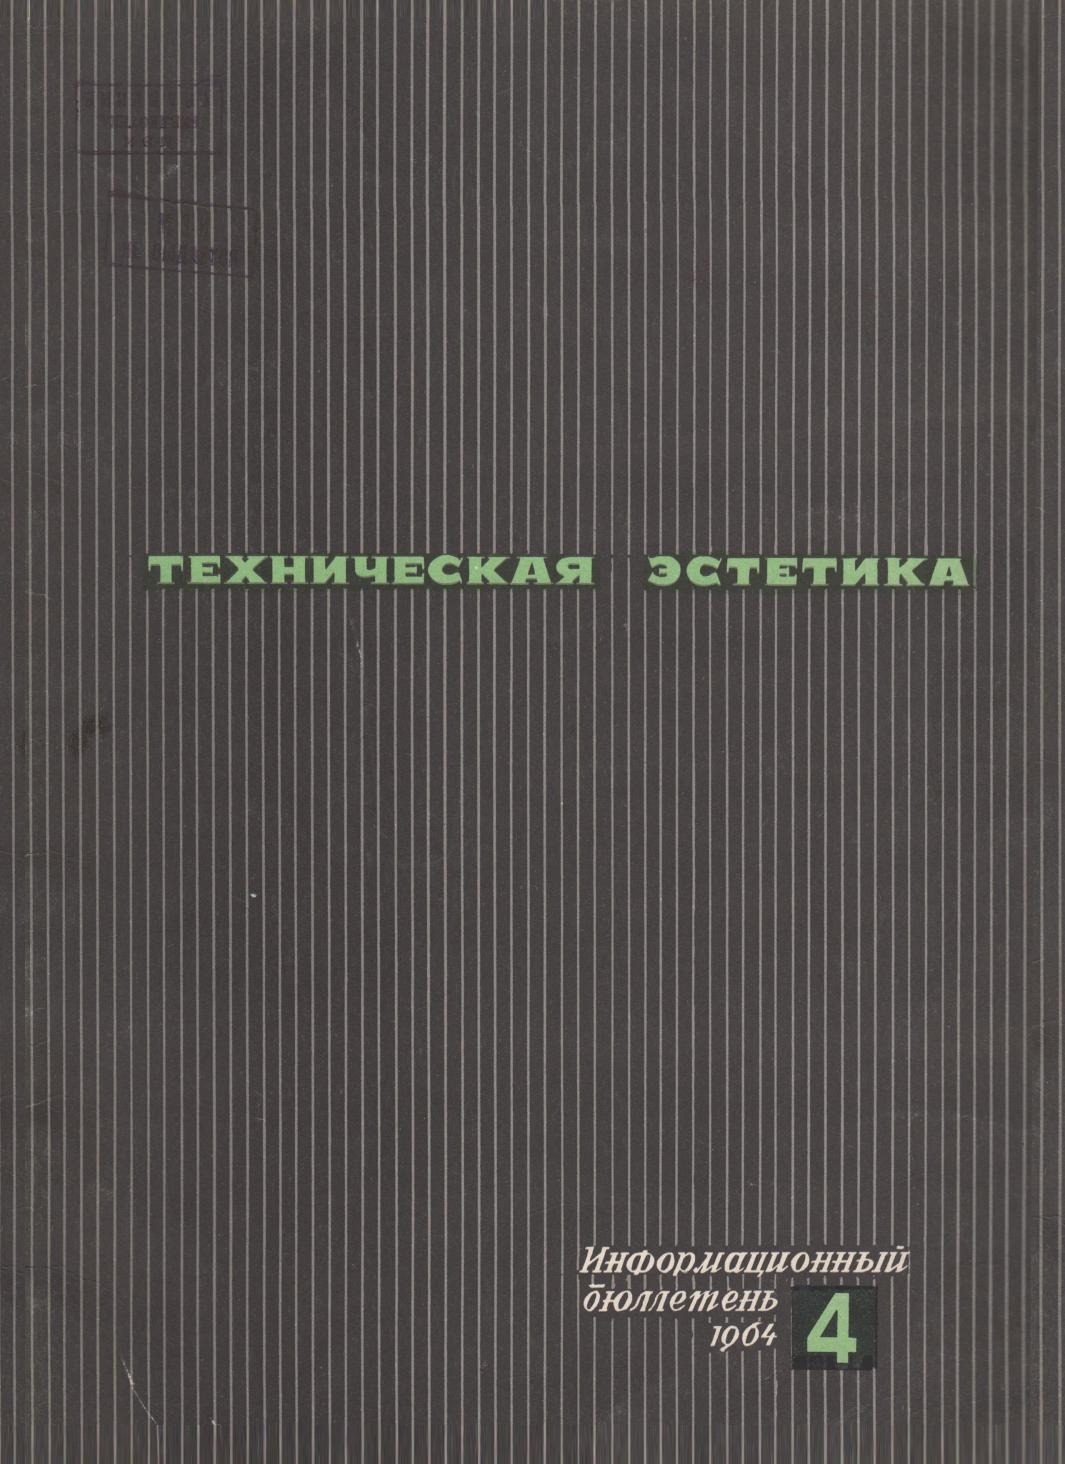 Техническая эстетика. 1964. № 4